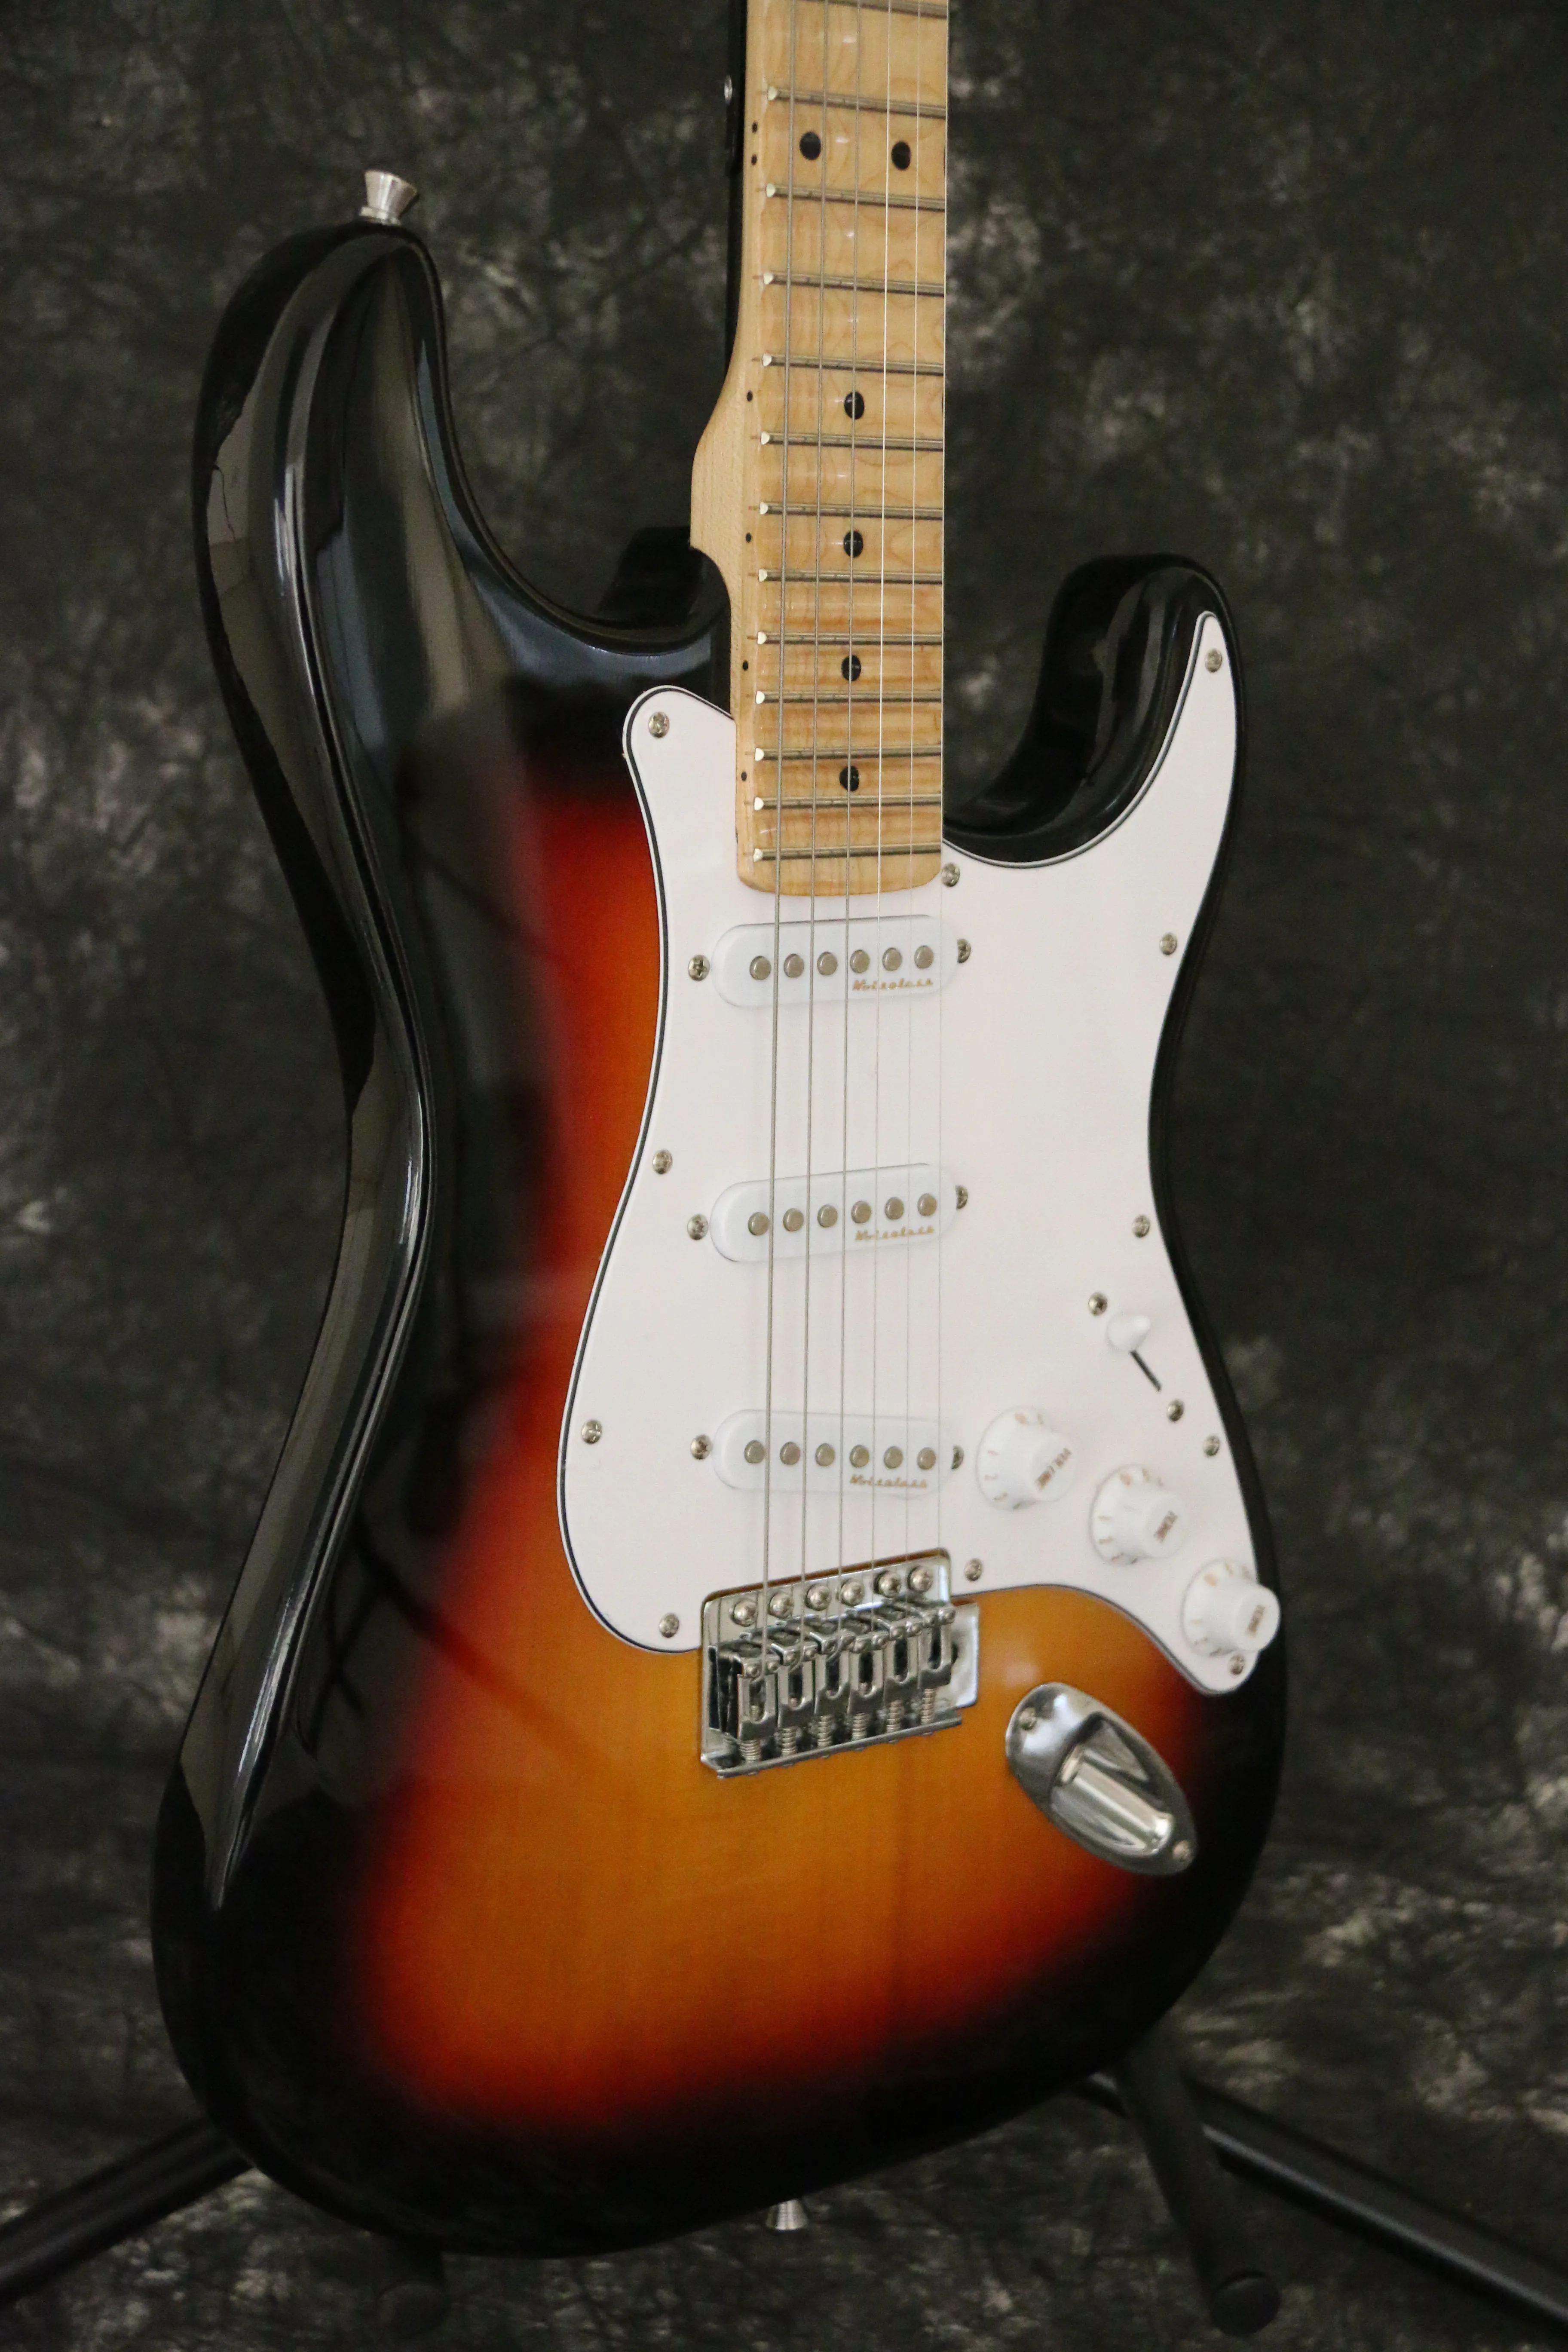 Глянцевая sunburst цветная зубчатая электрическая гитара ra звукосниматели sss клен шеи skunt инкрустация шеи назад гитара